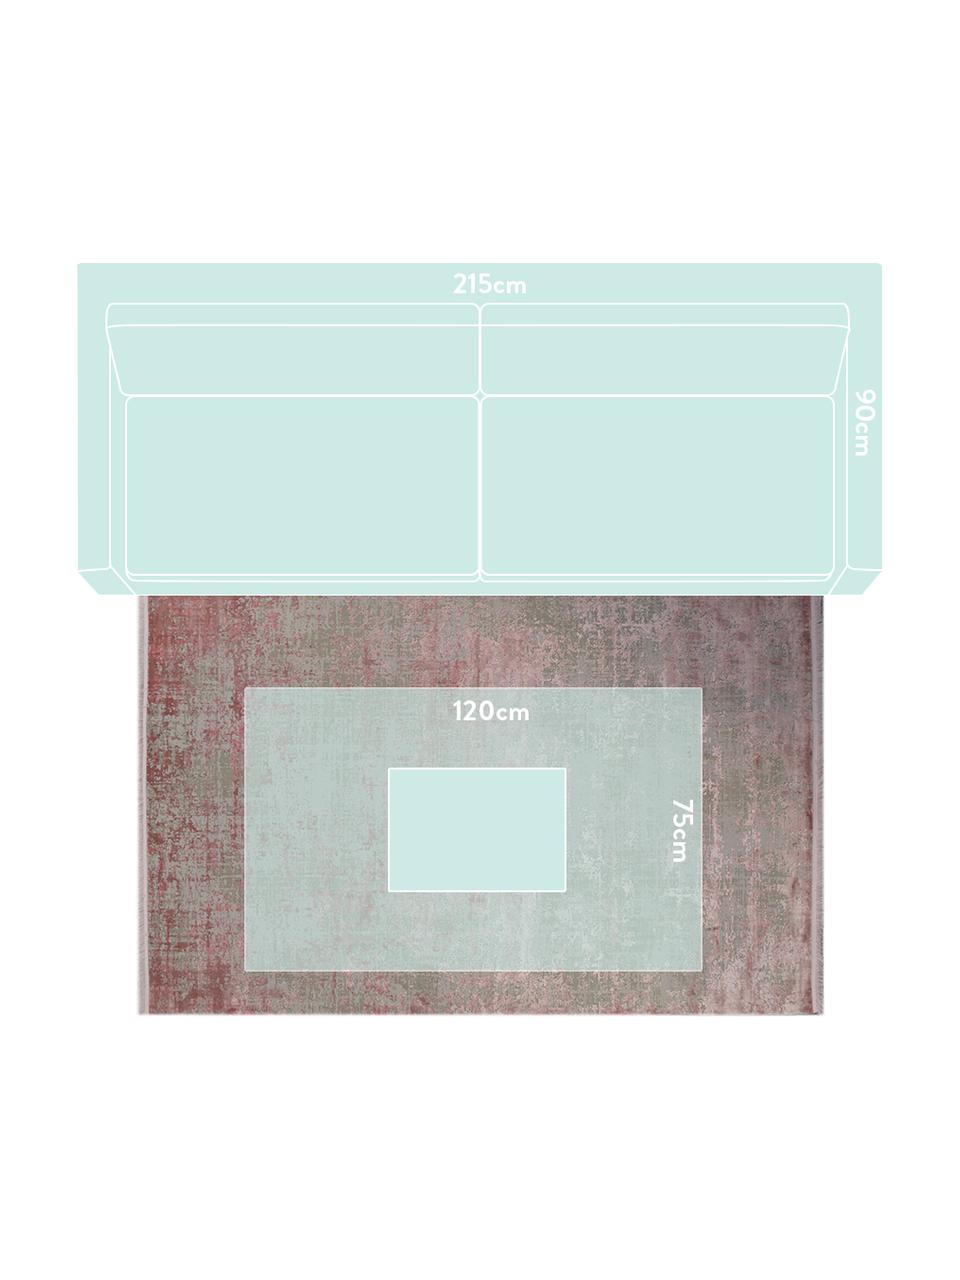 Tappeto vintage con frange effetto lucido Cordoba, Retro: cotone, Grigio, tonalità rosa, Larg. 130 x Lung. 190 cm (taglia S)